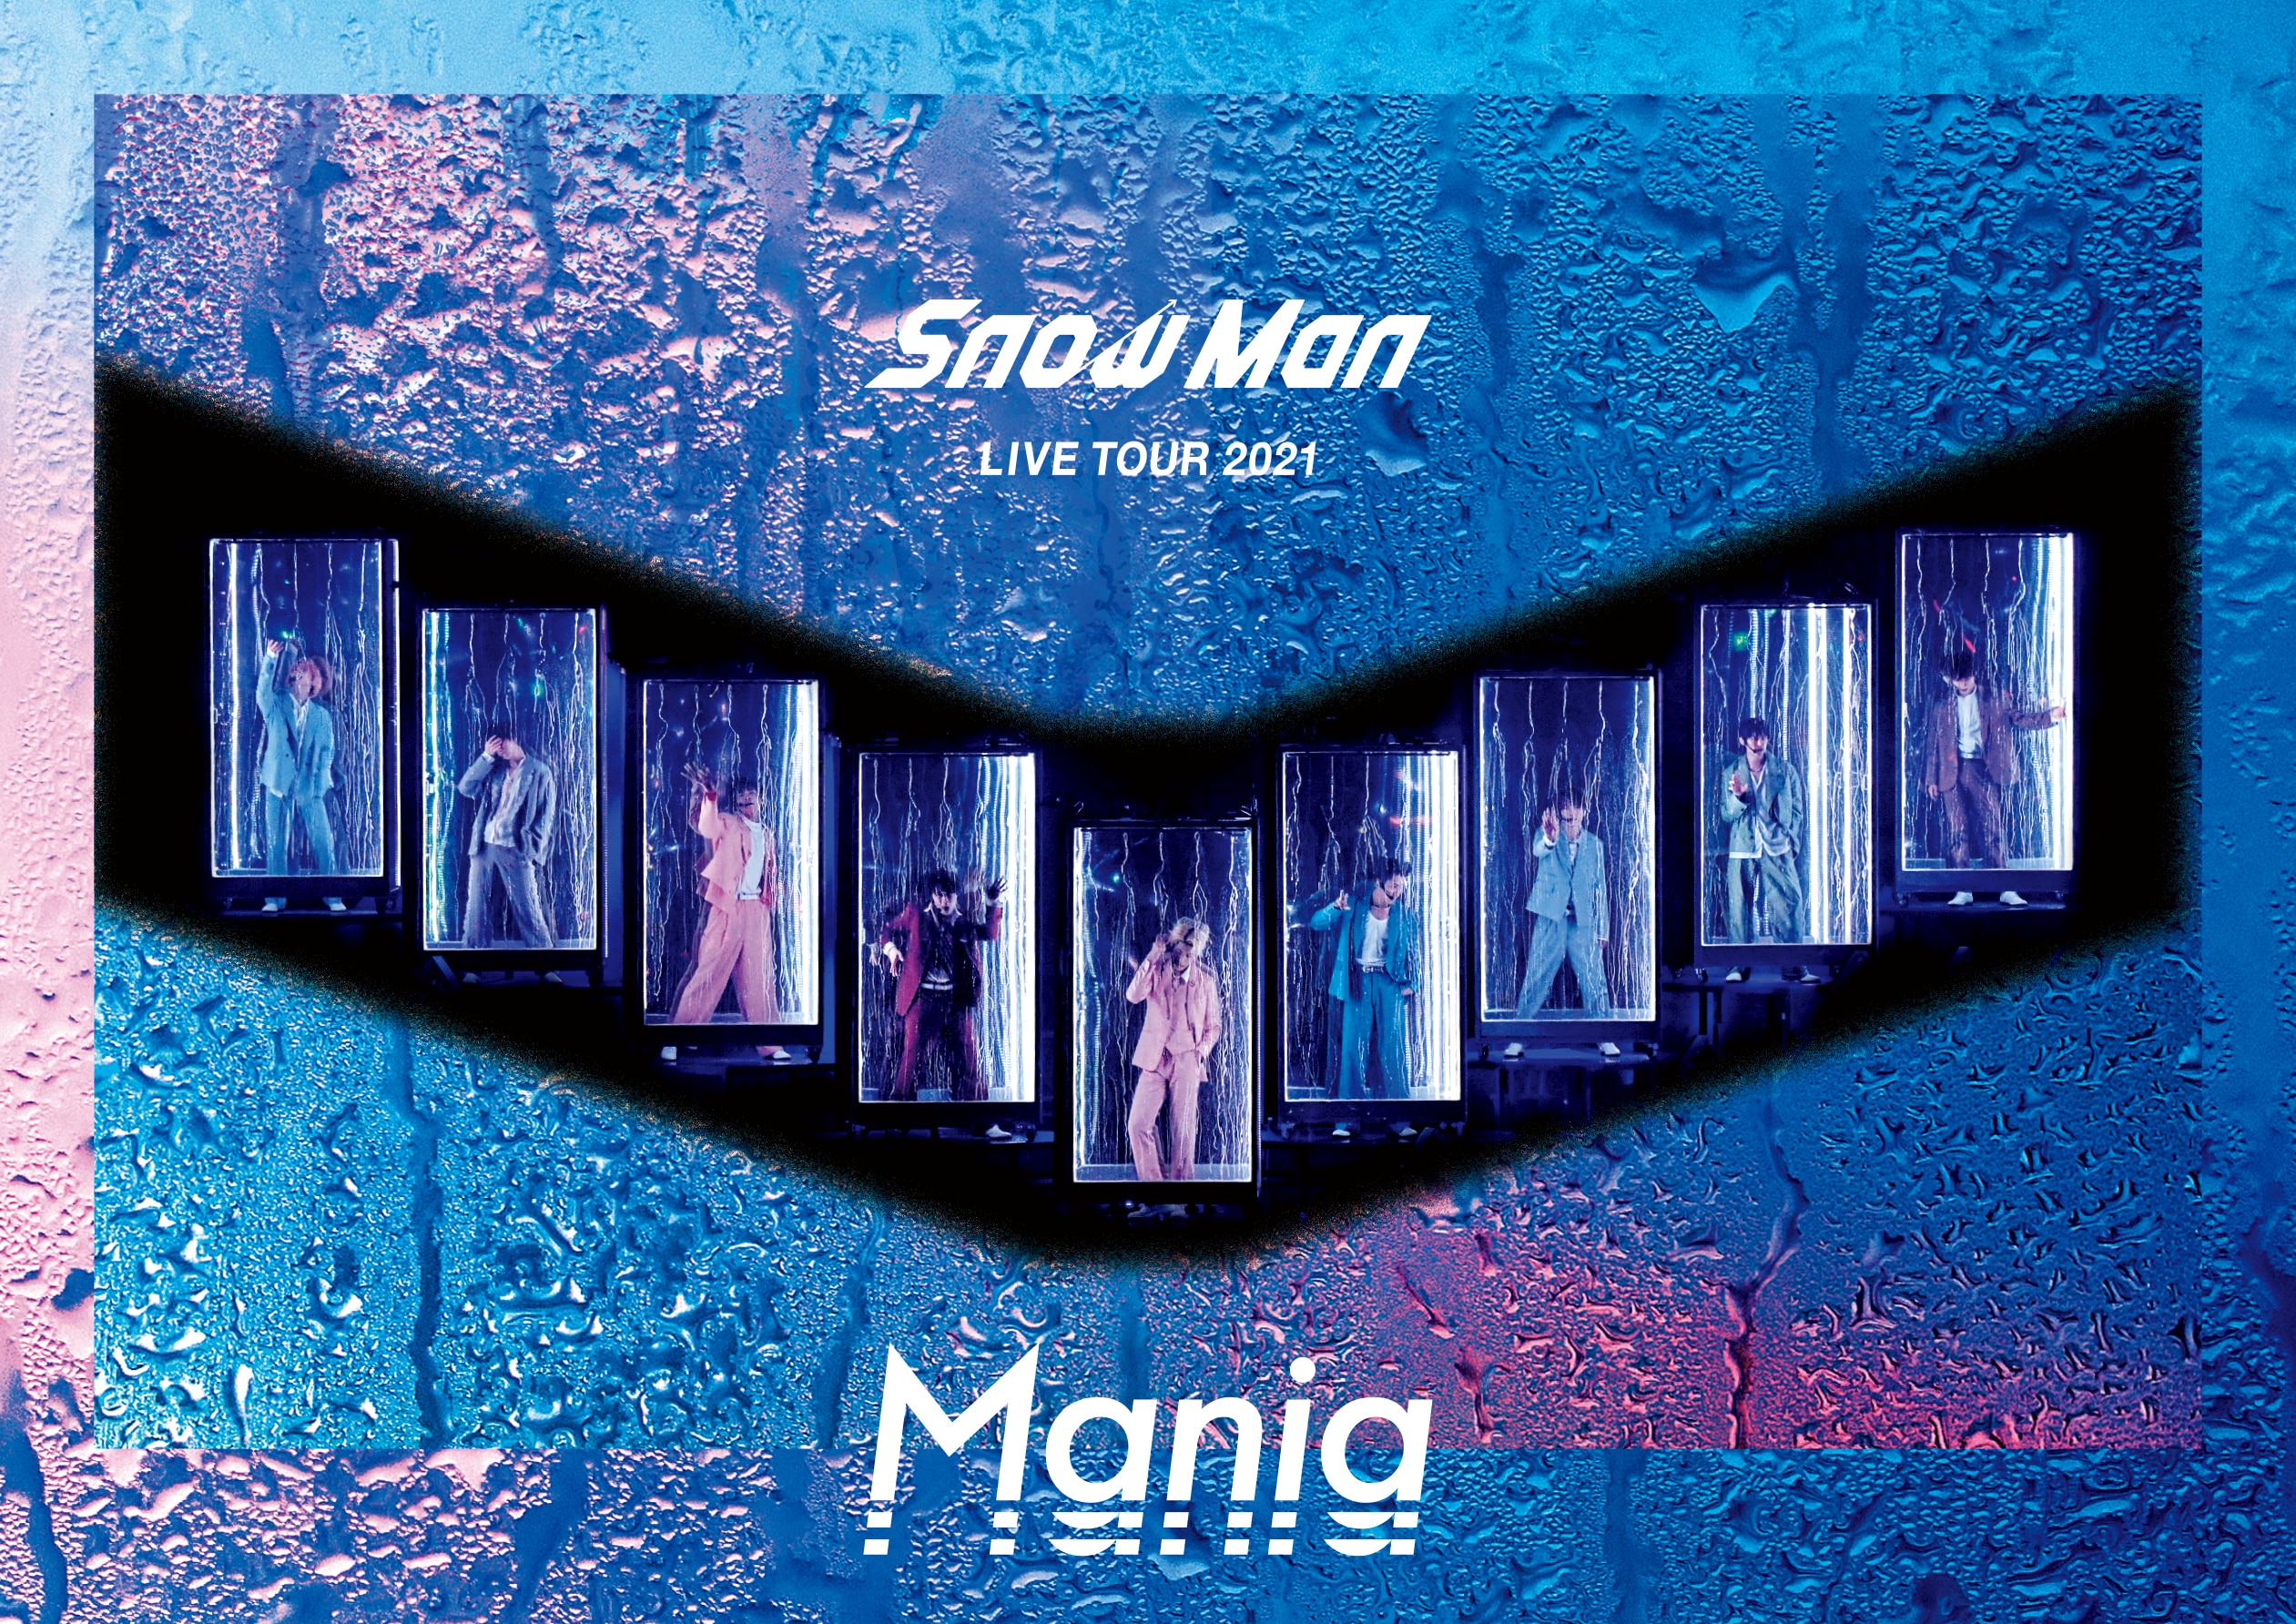 【新品】Snow Man LIVE TOUR 2021 Mania初回盤 DVD ミュージック DVD/ブルーレイ 本・音楽・ゲーム 値段交渉